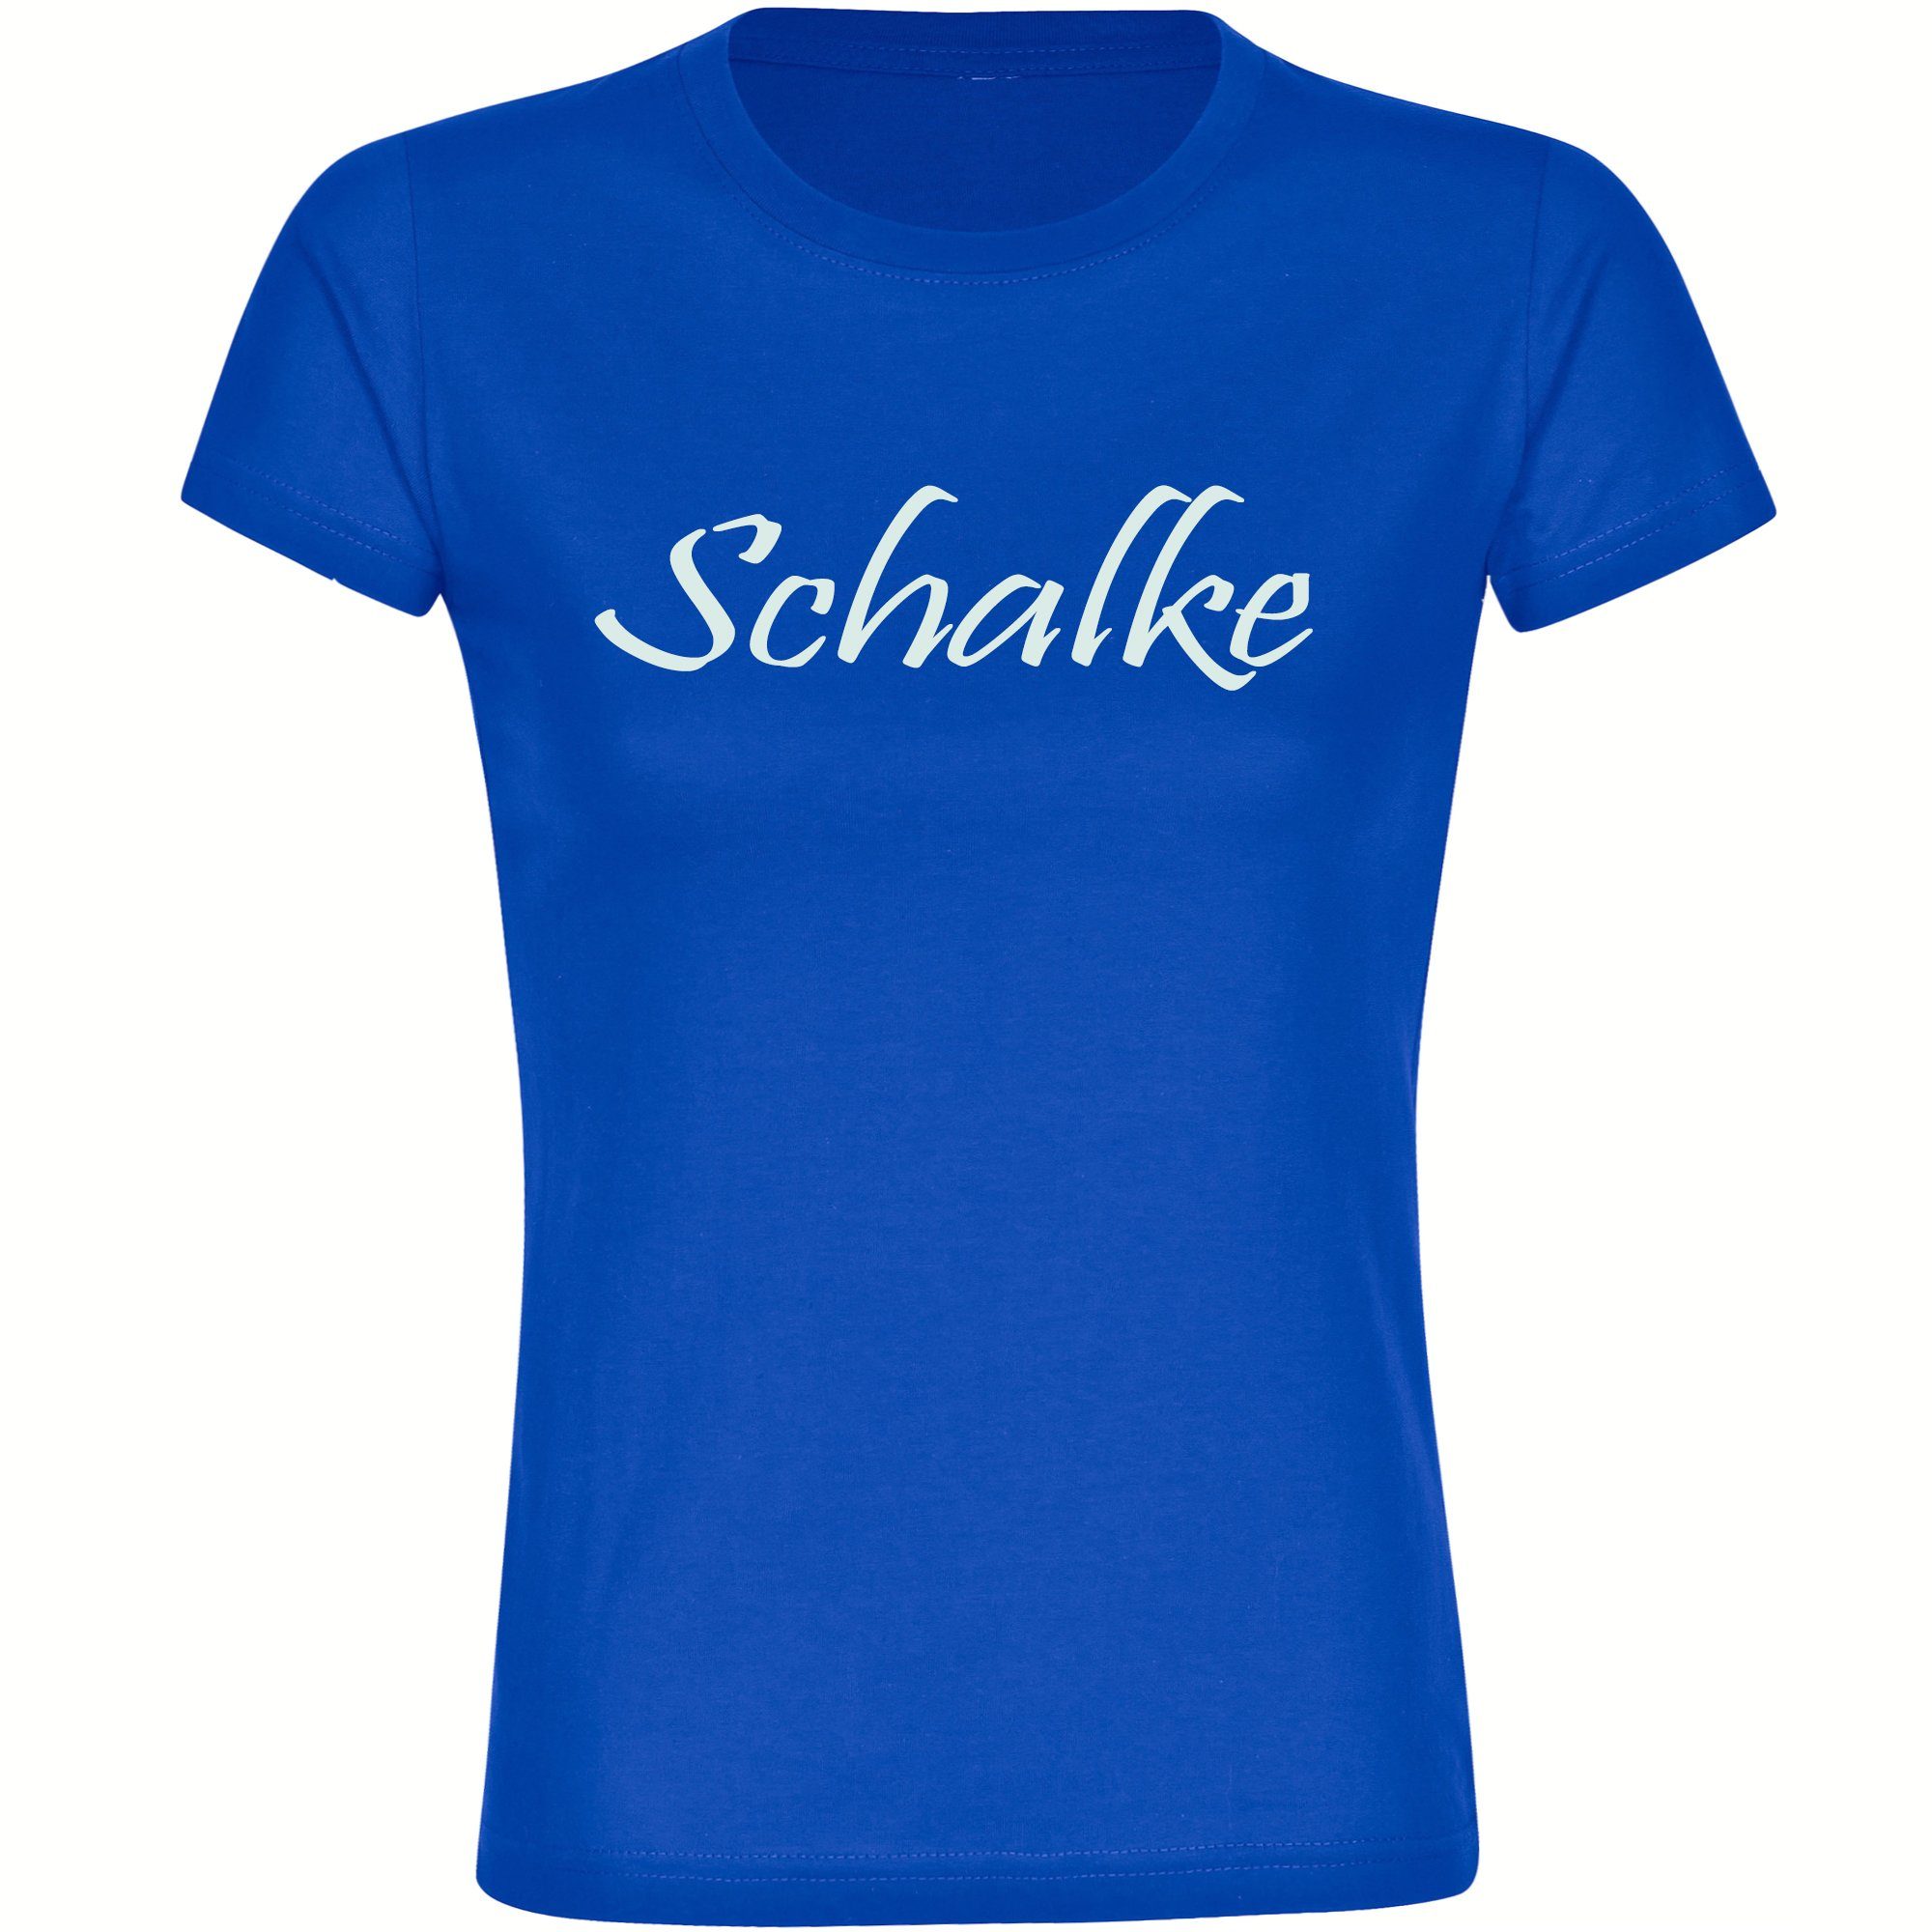 multifanshop T-Shirt Damen Schalke - Schriftzug - Frauen